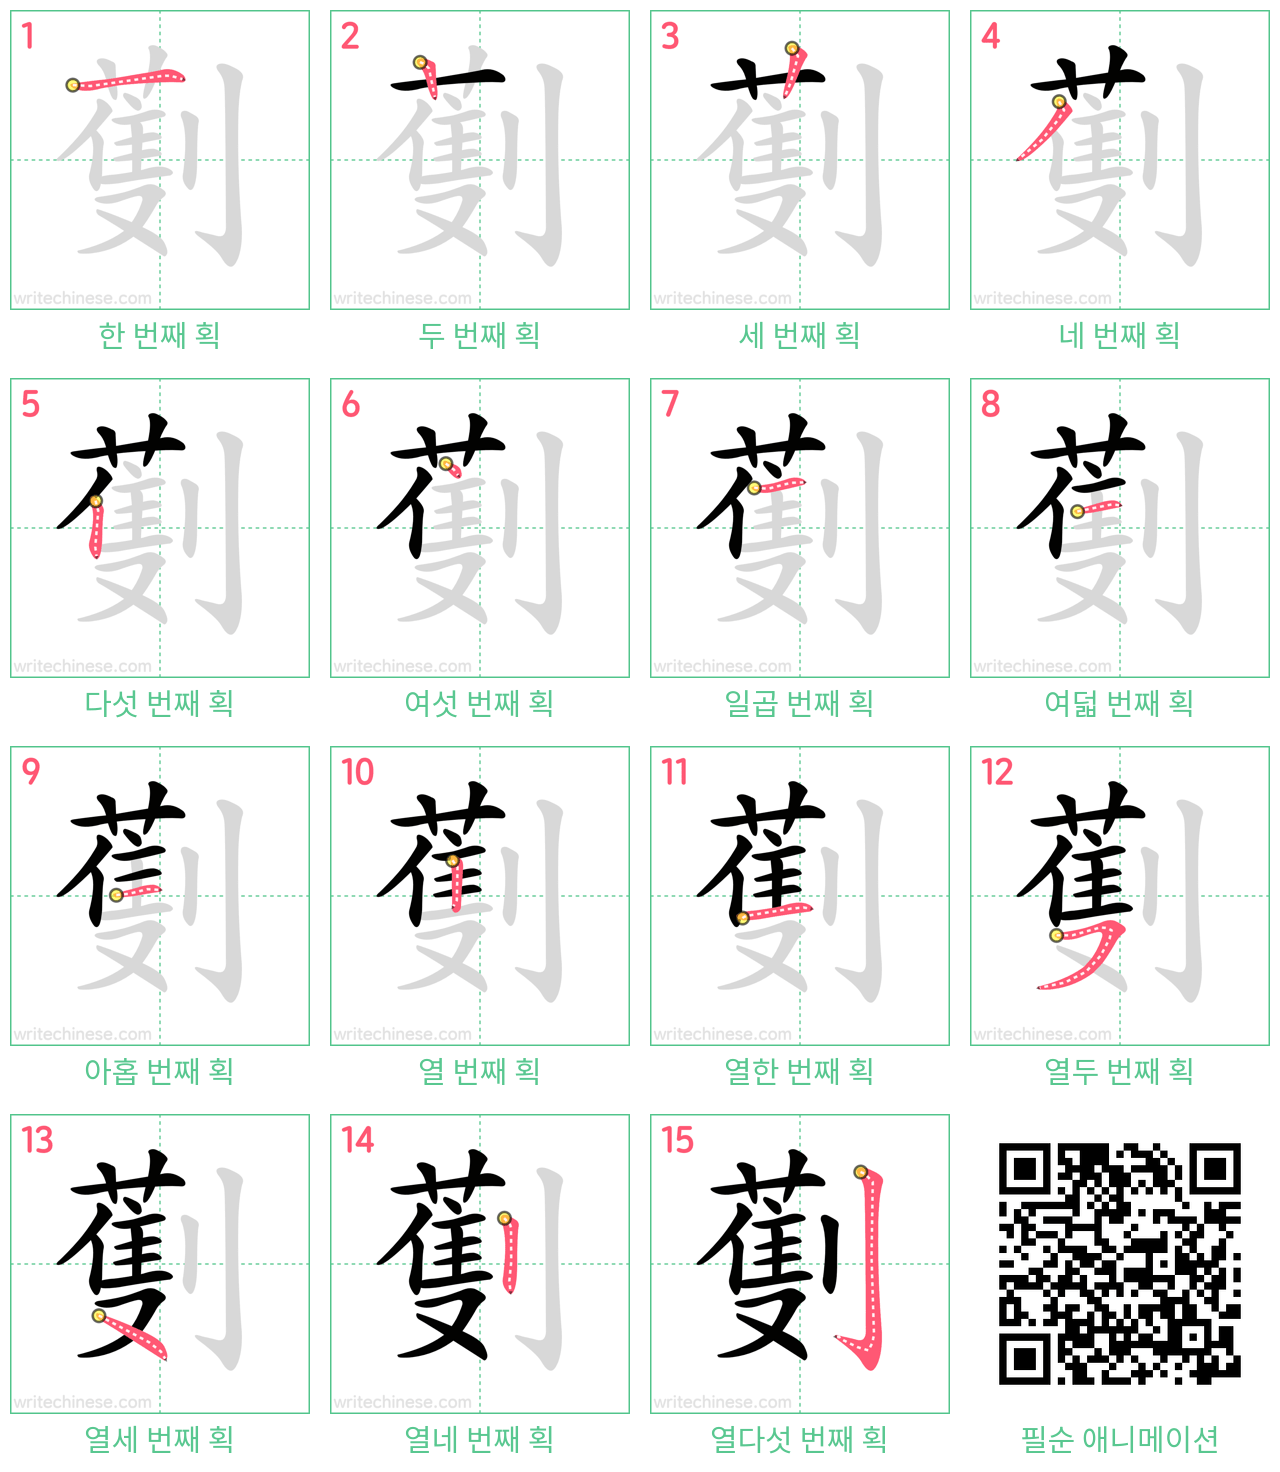 劐 step-by-step stroke order diagrams